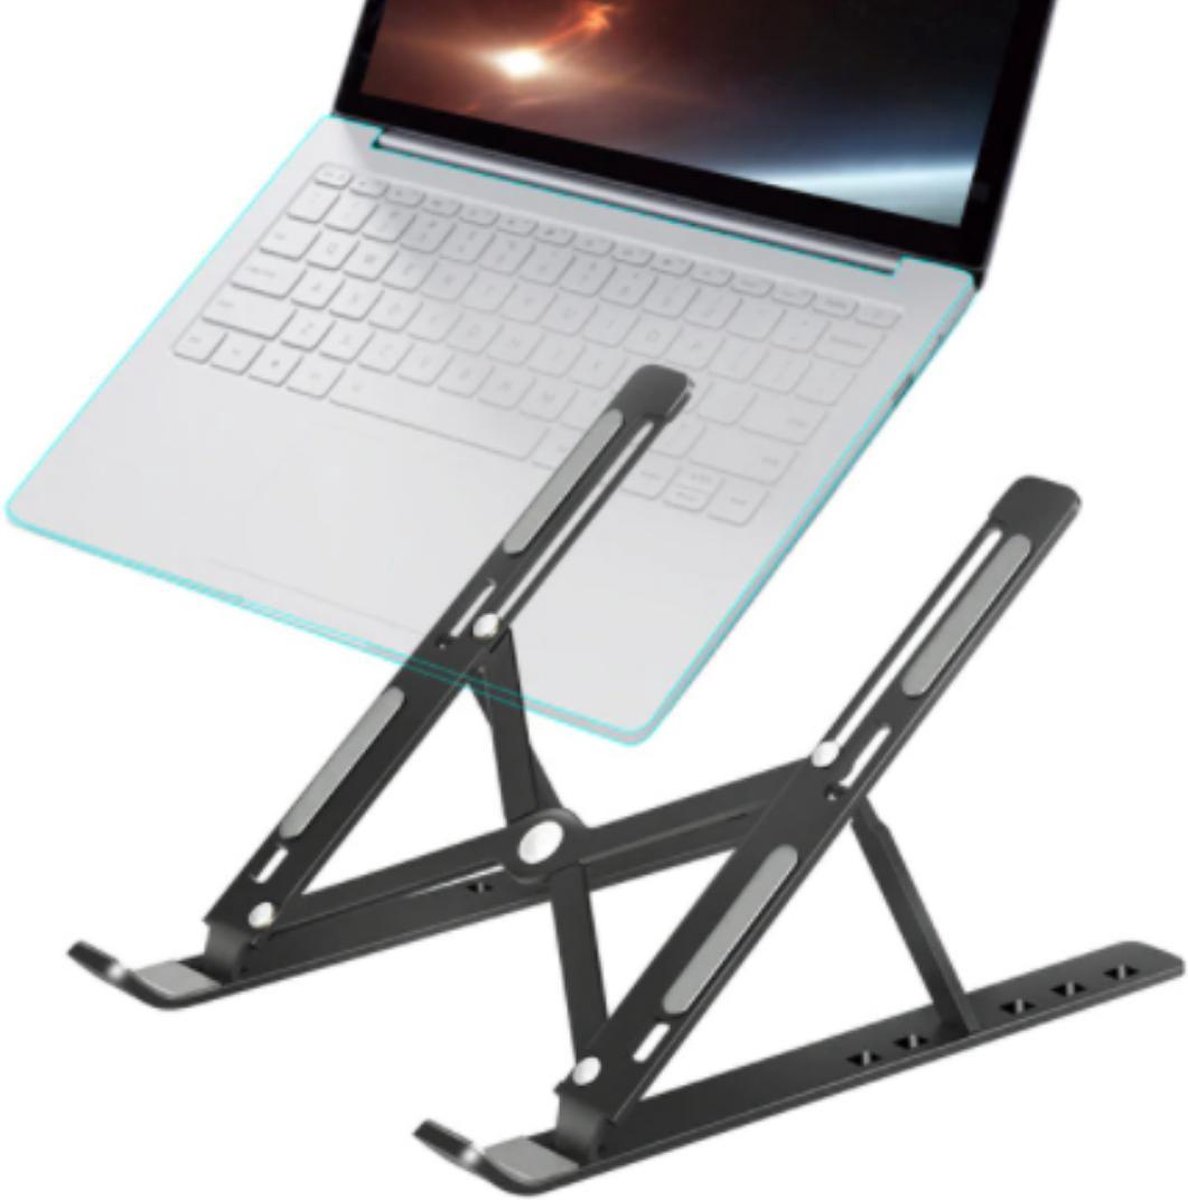 STRADING - Ergonomische laptop standaard |Zwart | laptop standlaptopstandaard | laptophouder